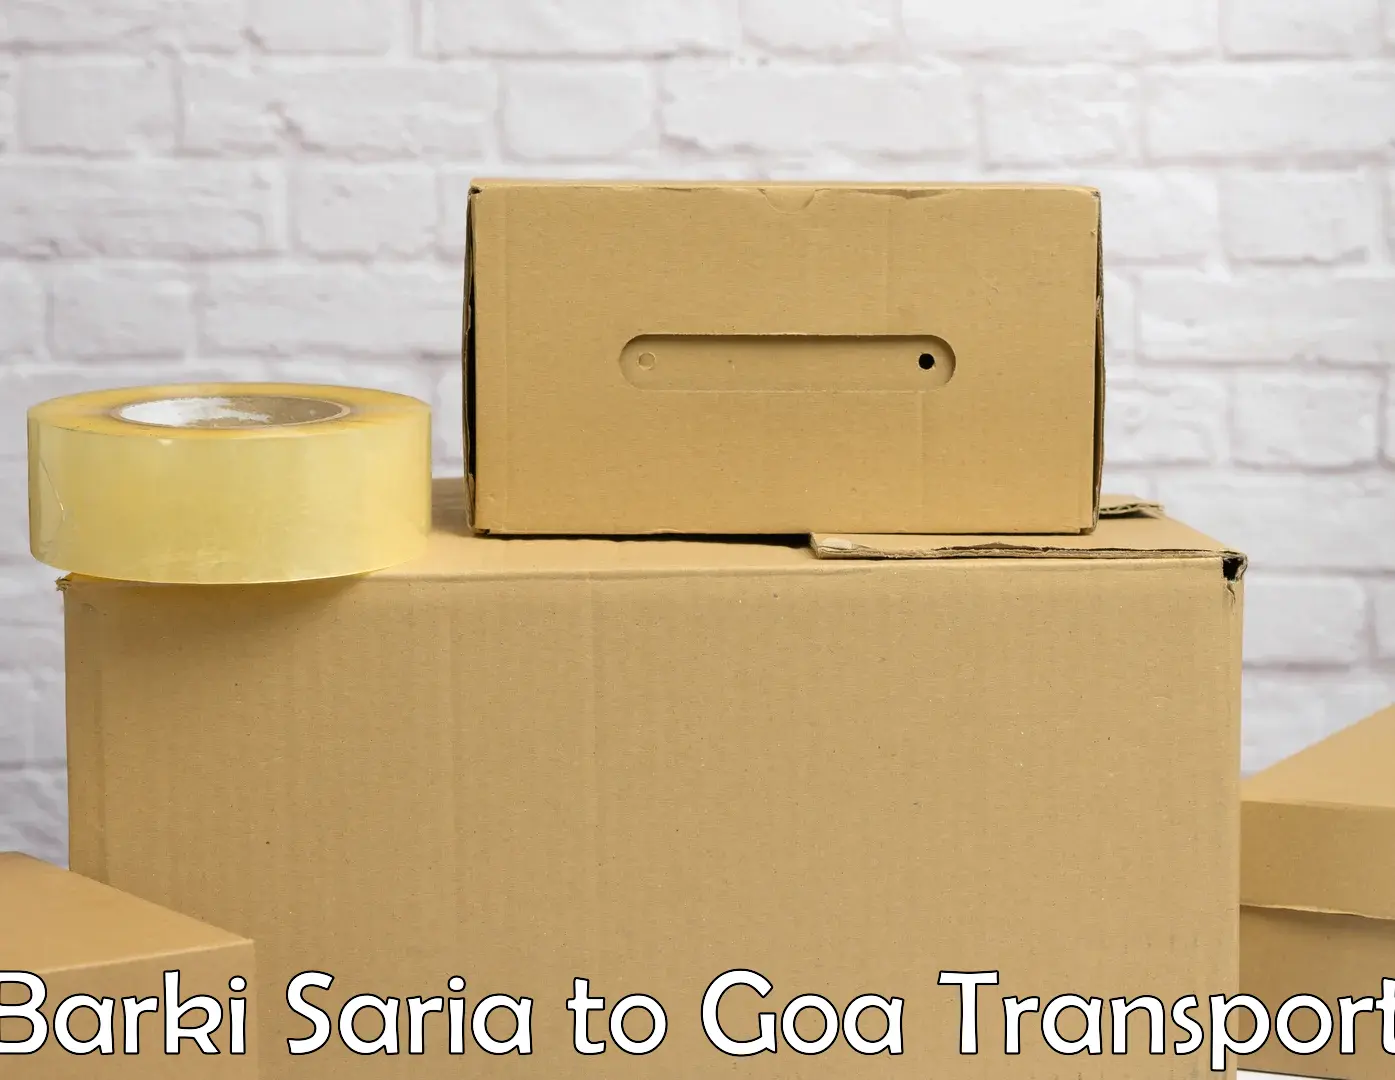 Land transport services Barki Saria to Goa